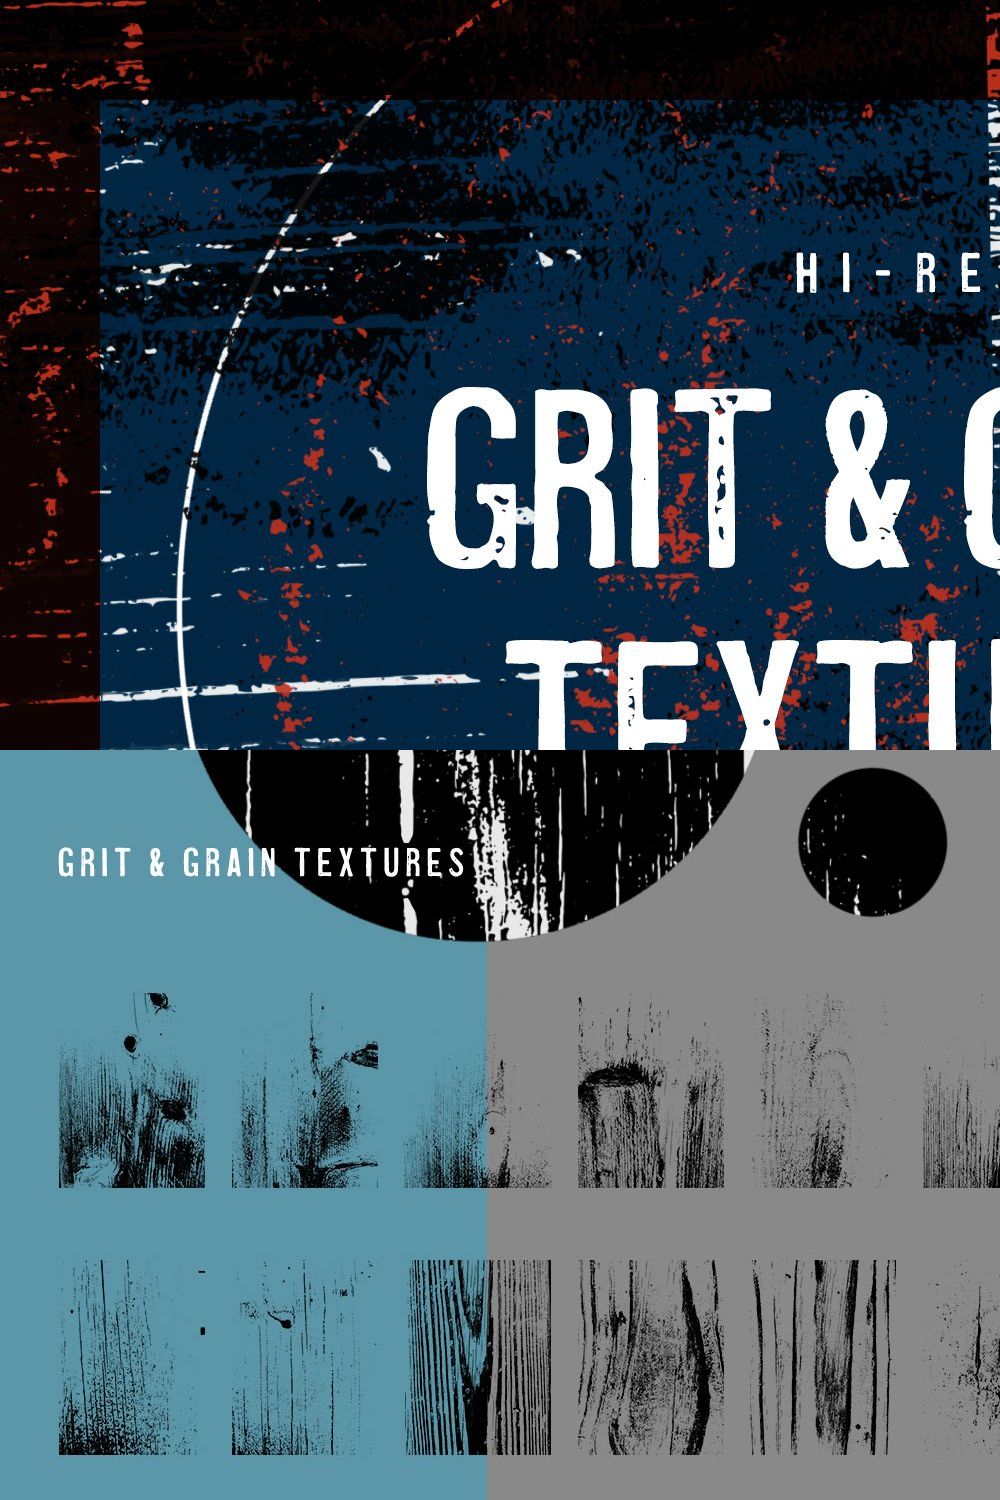 Grit & Grain Textures pinterest preview image.